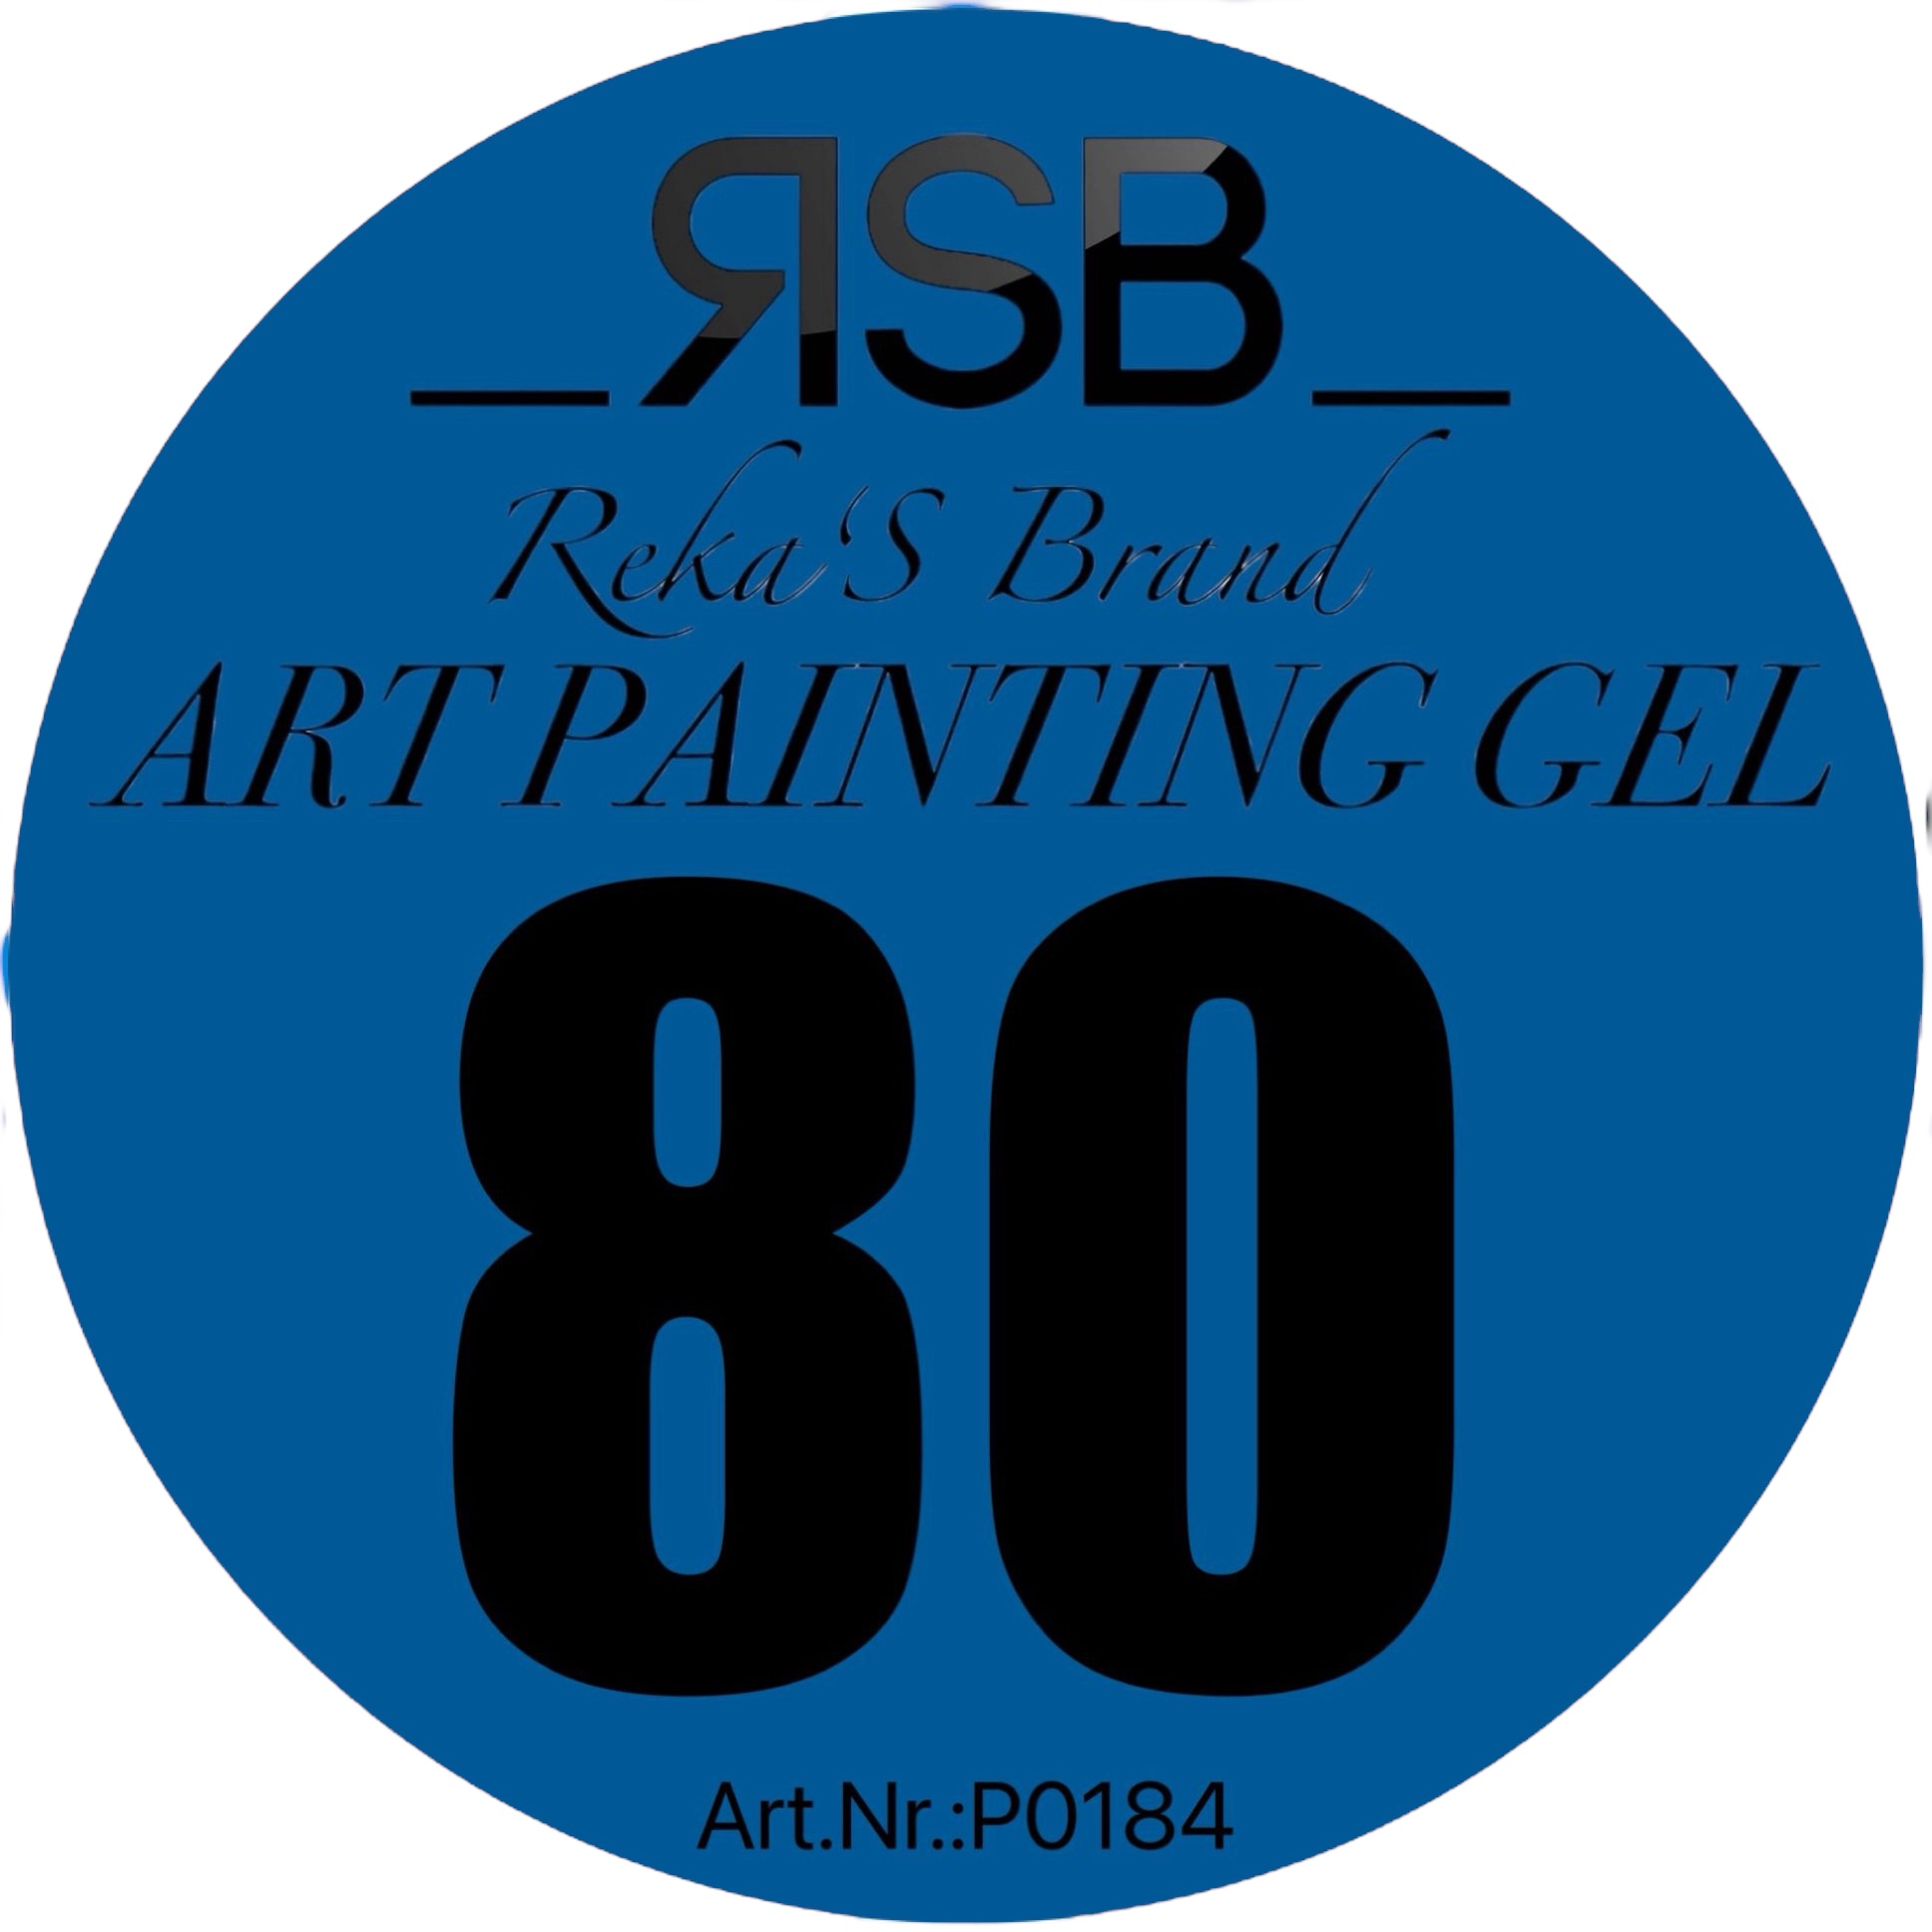 ART PAINTING GEL 80